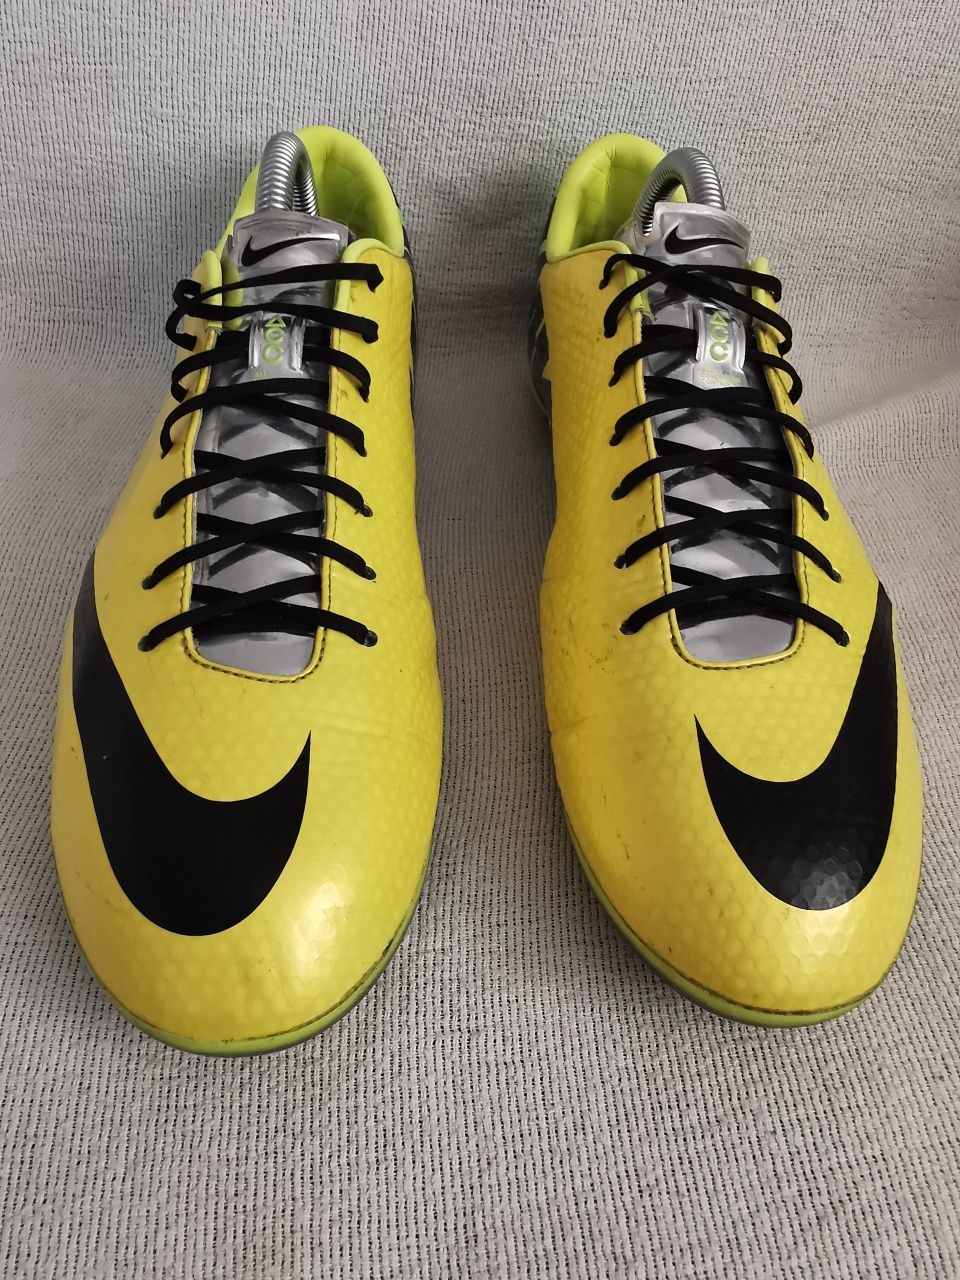 Nike Mercurial Vapor IX Acc Bośnia korki lanki buty piłkarskie 41